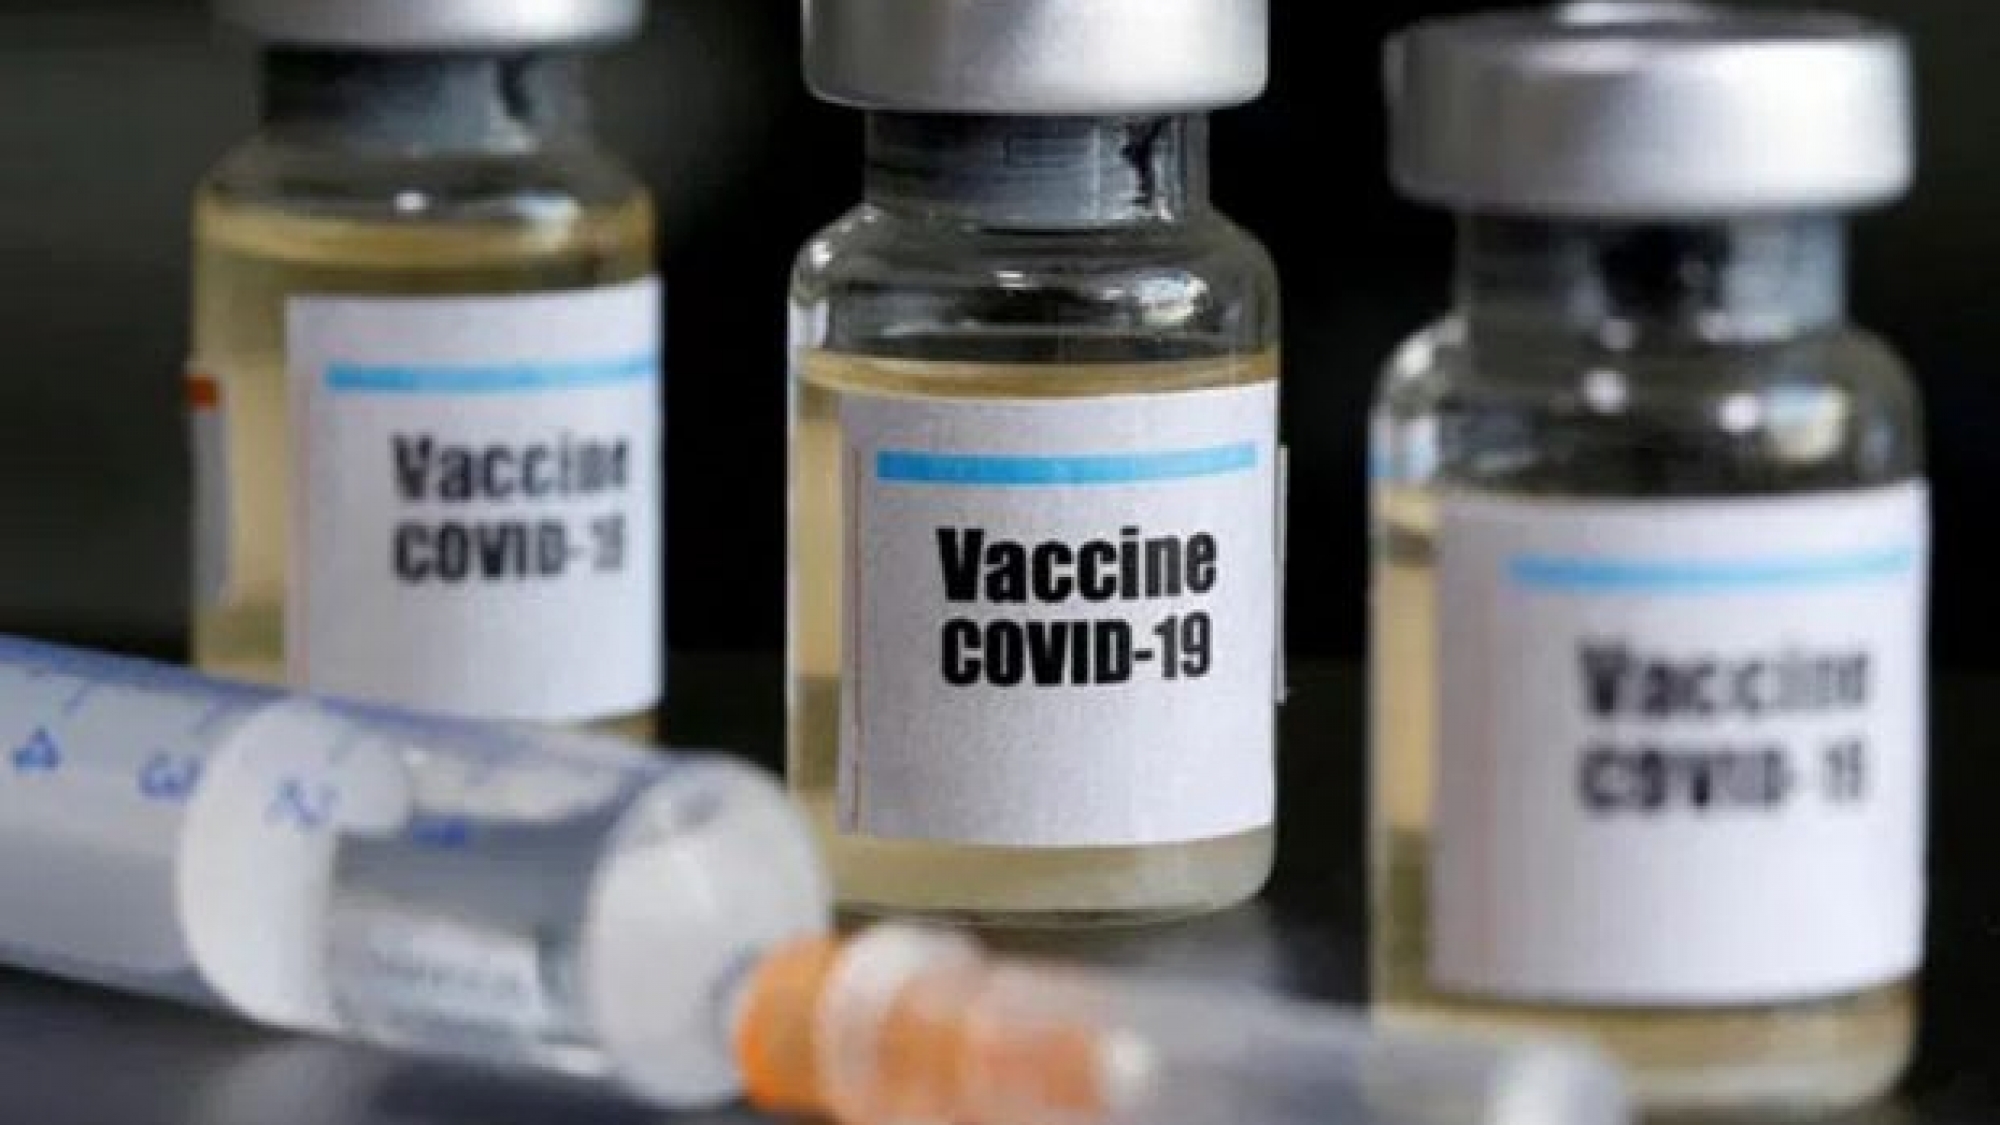 Vaccine covid